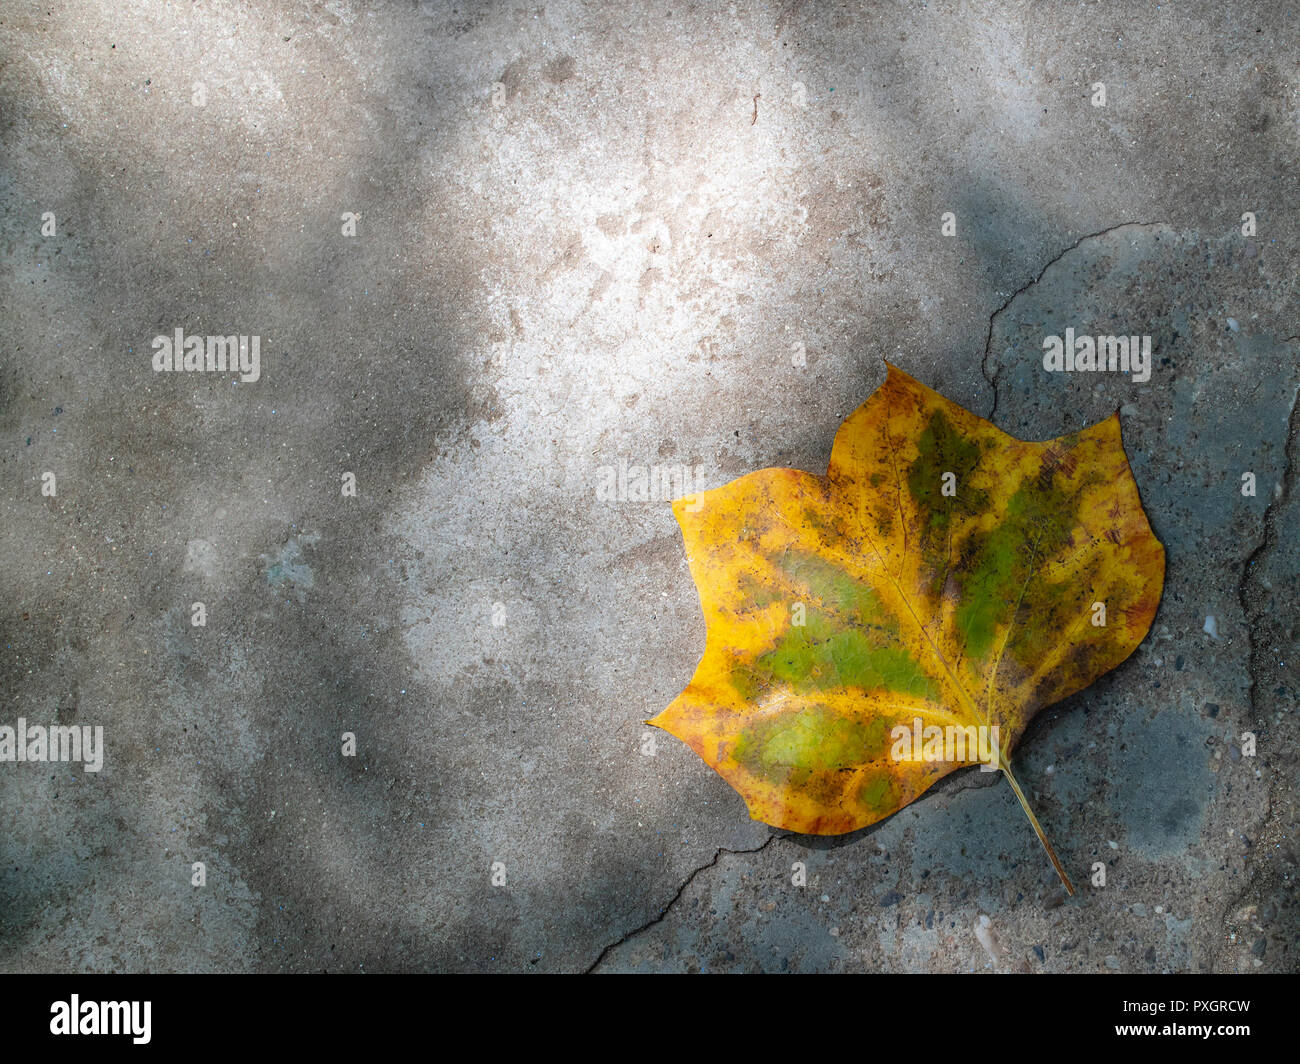 Ein gefallener Gelb und Grün Herbst Blatt auf grauem Beton Pflaster  Stockfotografie - Alamy